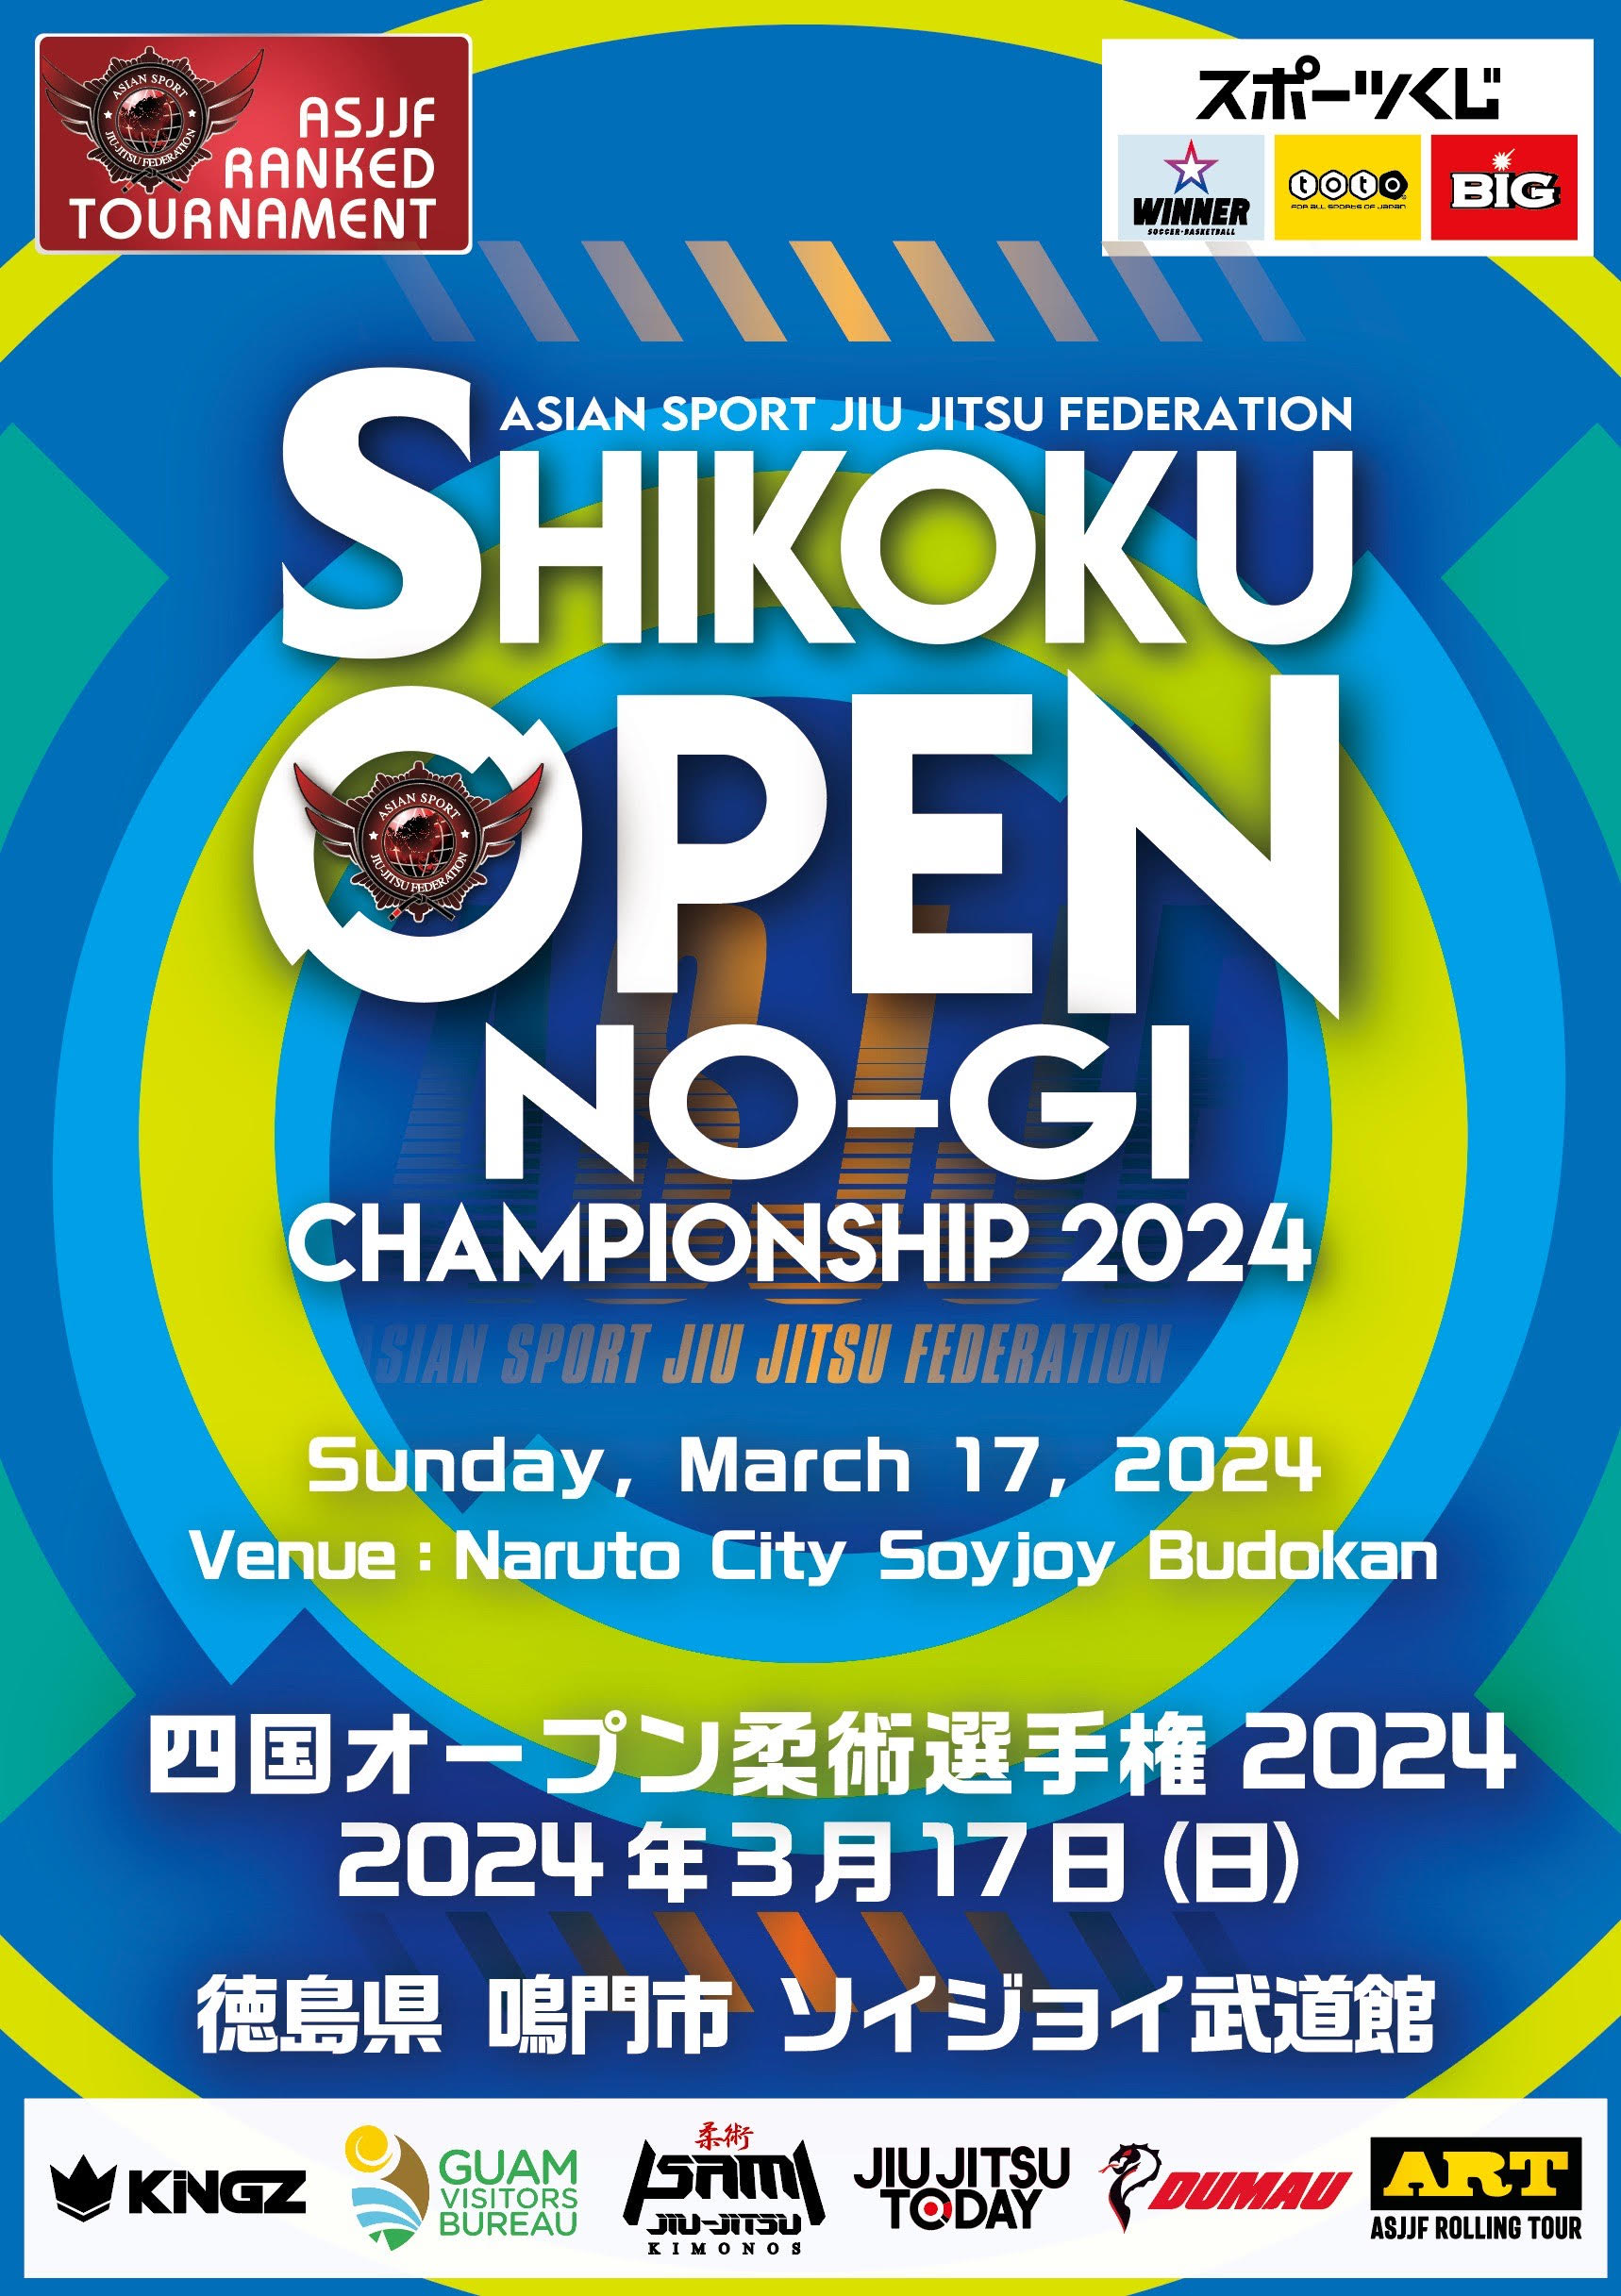 shikoku open no-gi championship 2024. (NO-GI)